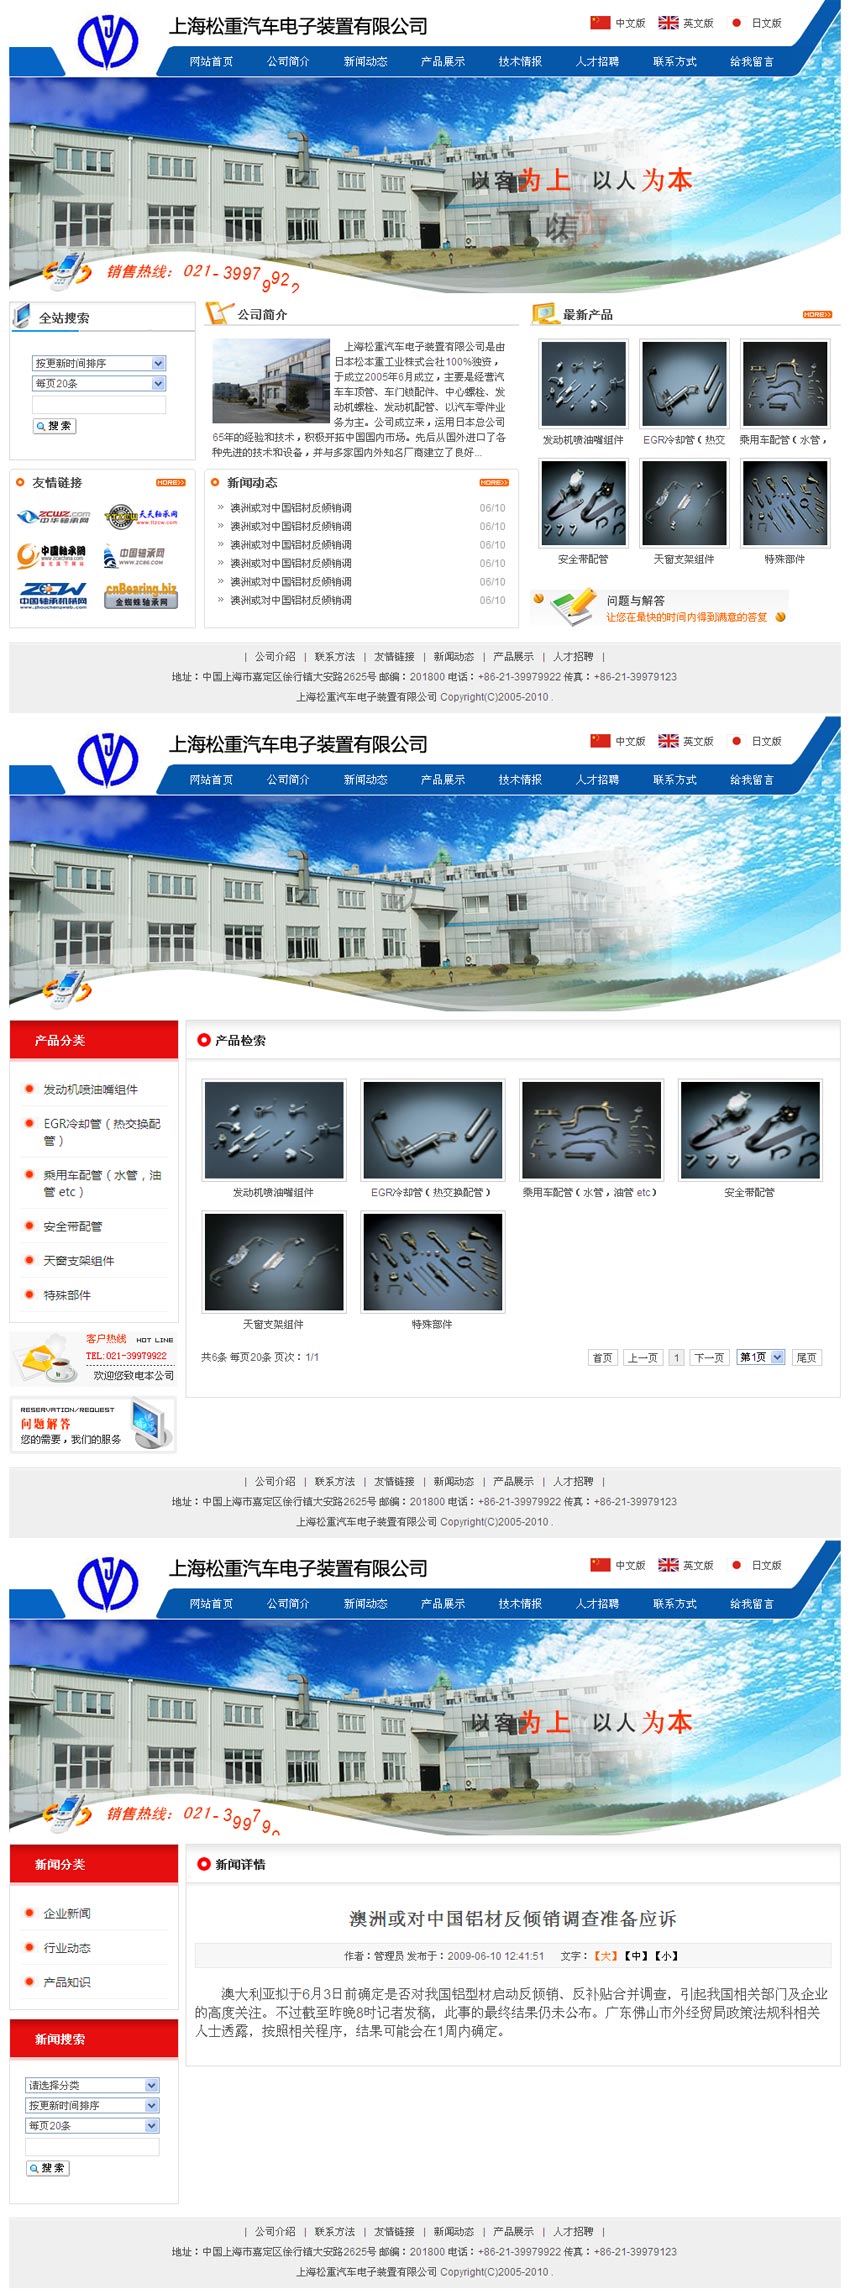 蓝色的上海松重汽车电子配件公司网页模板全站html源码下载